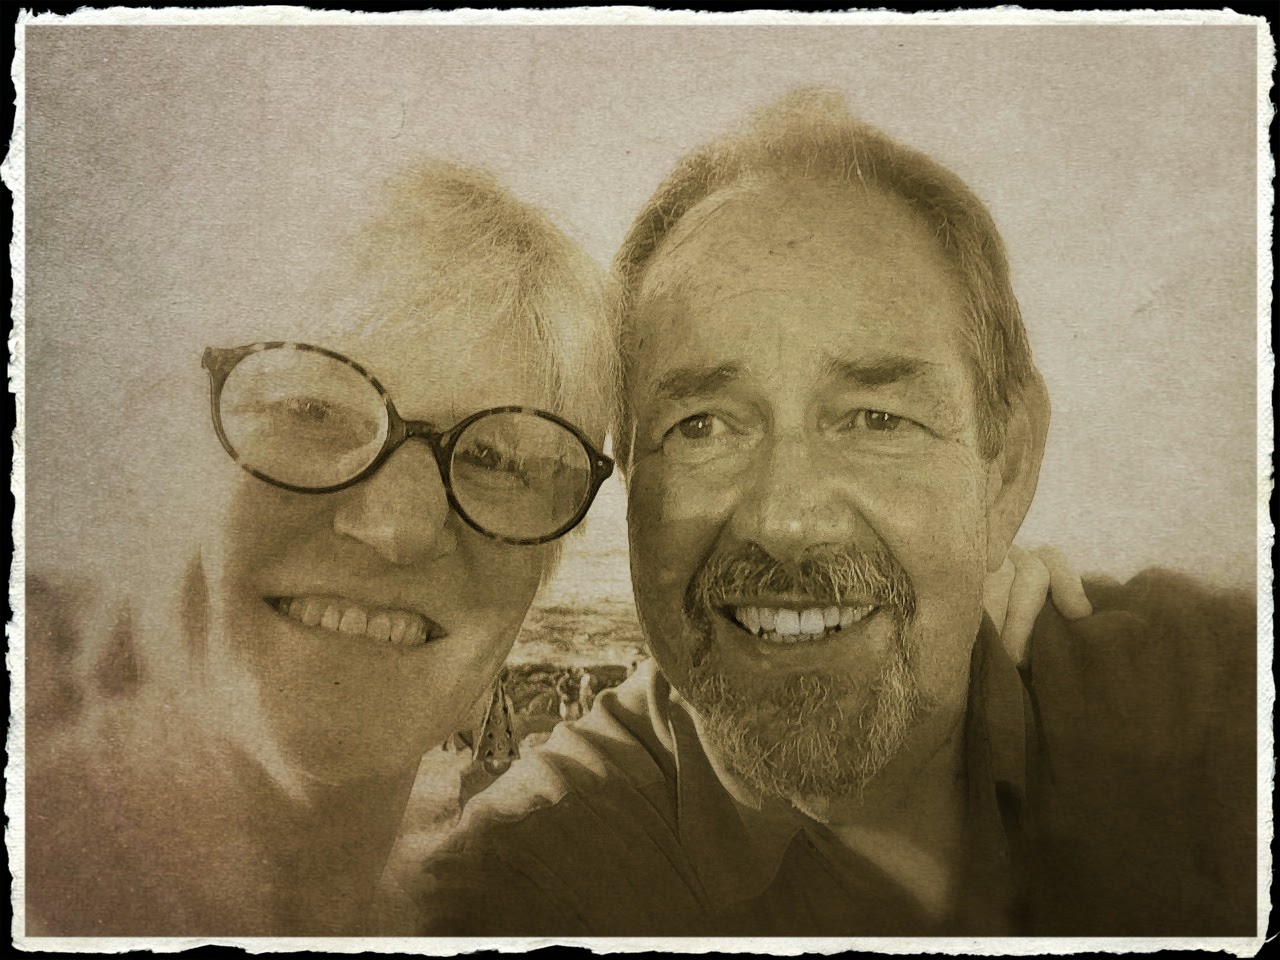 John and Deb in Nicaragua